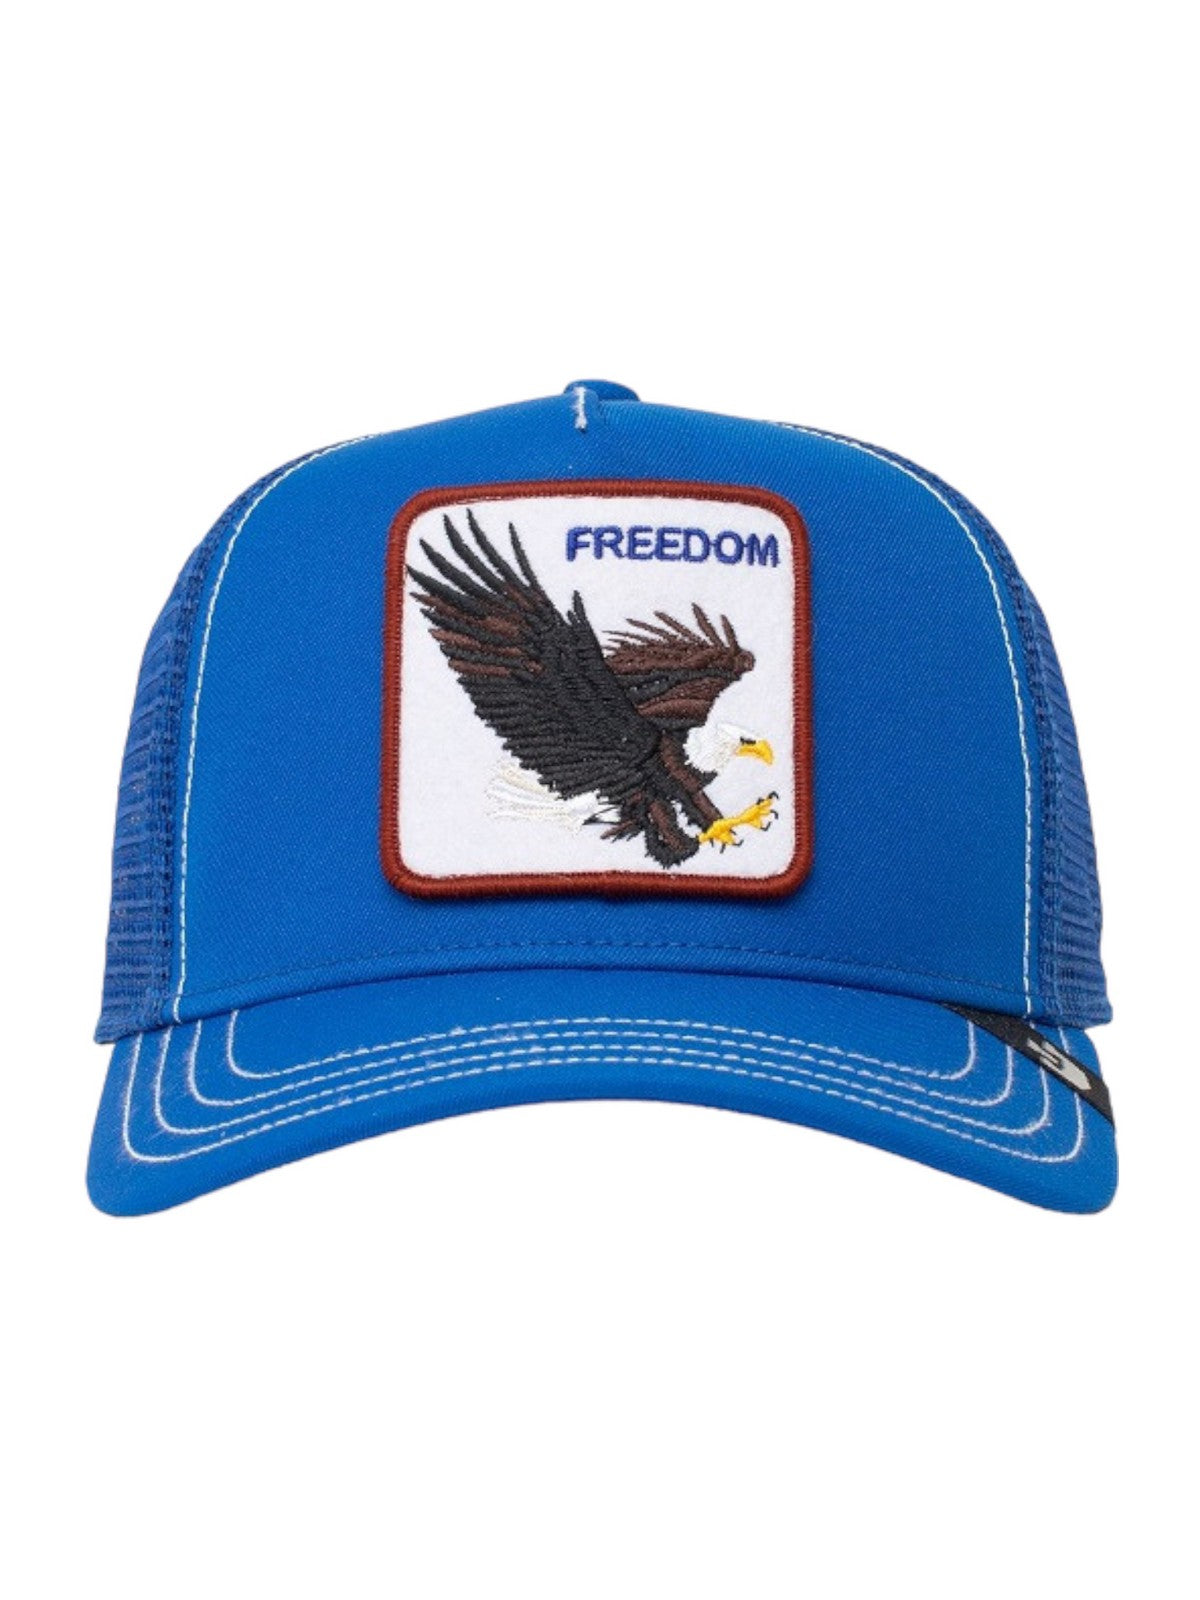 GOORIN BROS Cappello Uomo The freedom eagle 101-0384-BLU Blu